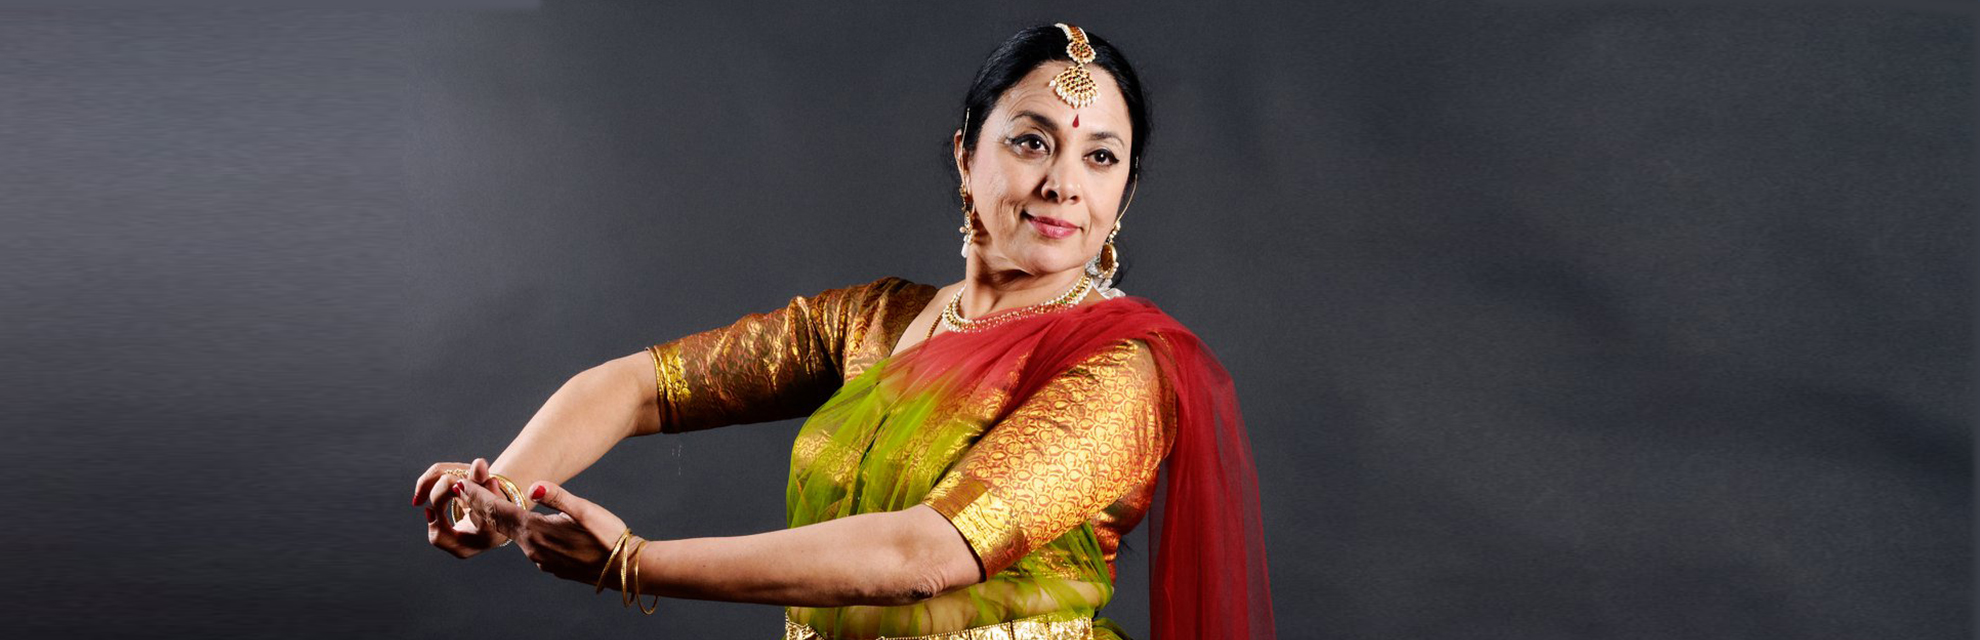 Vũ công Kathak Tiến sĩ Malini Ranganathan là đại sứ văn hóa của Ấn Độ trên thế giới